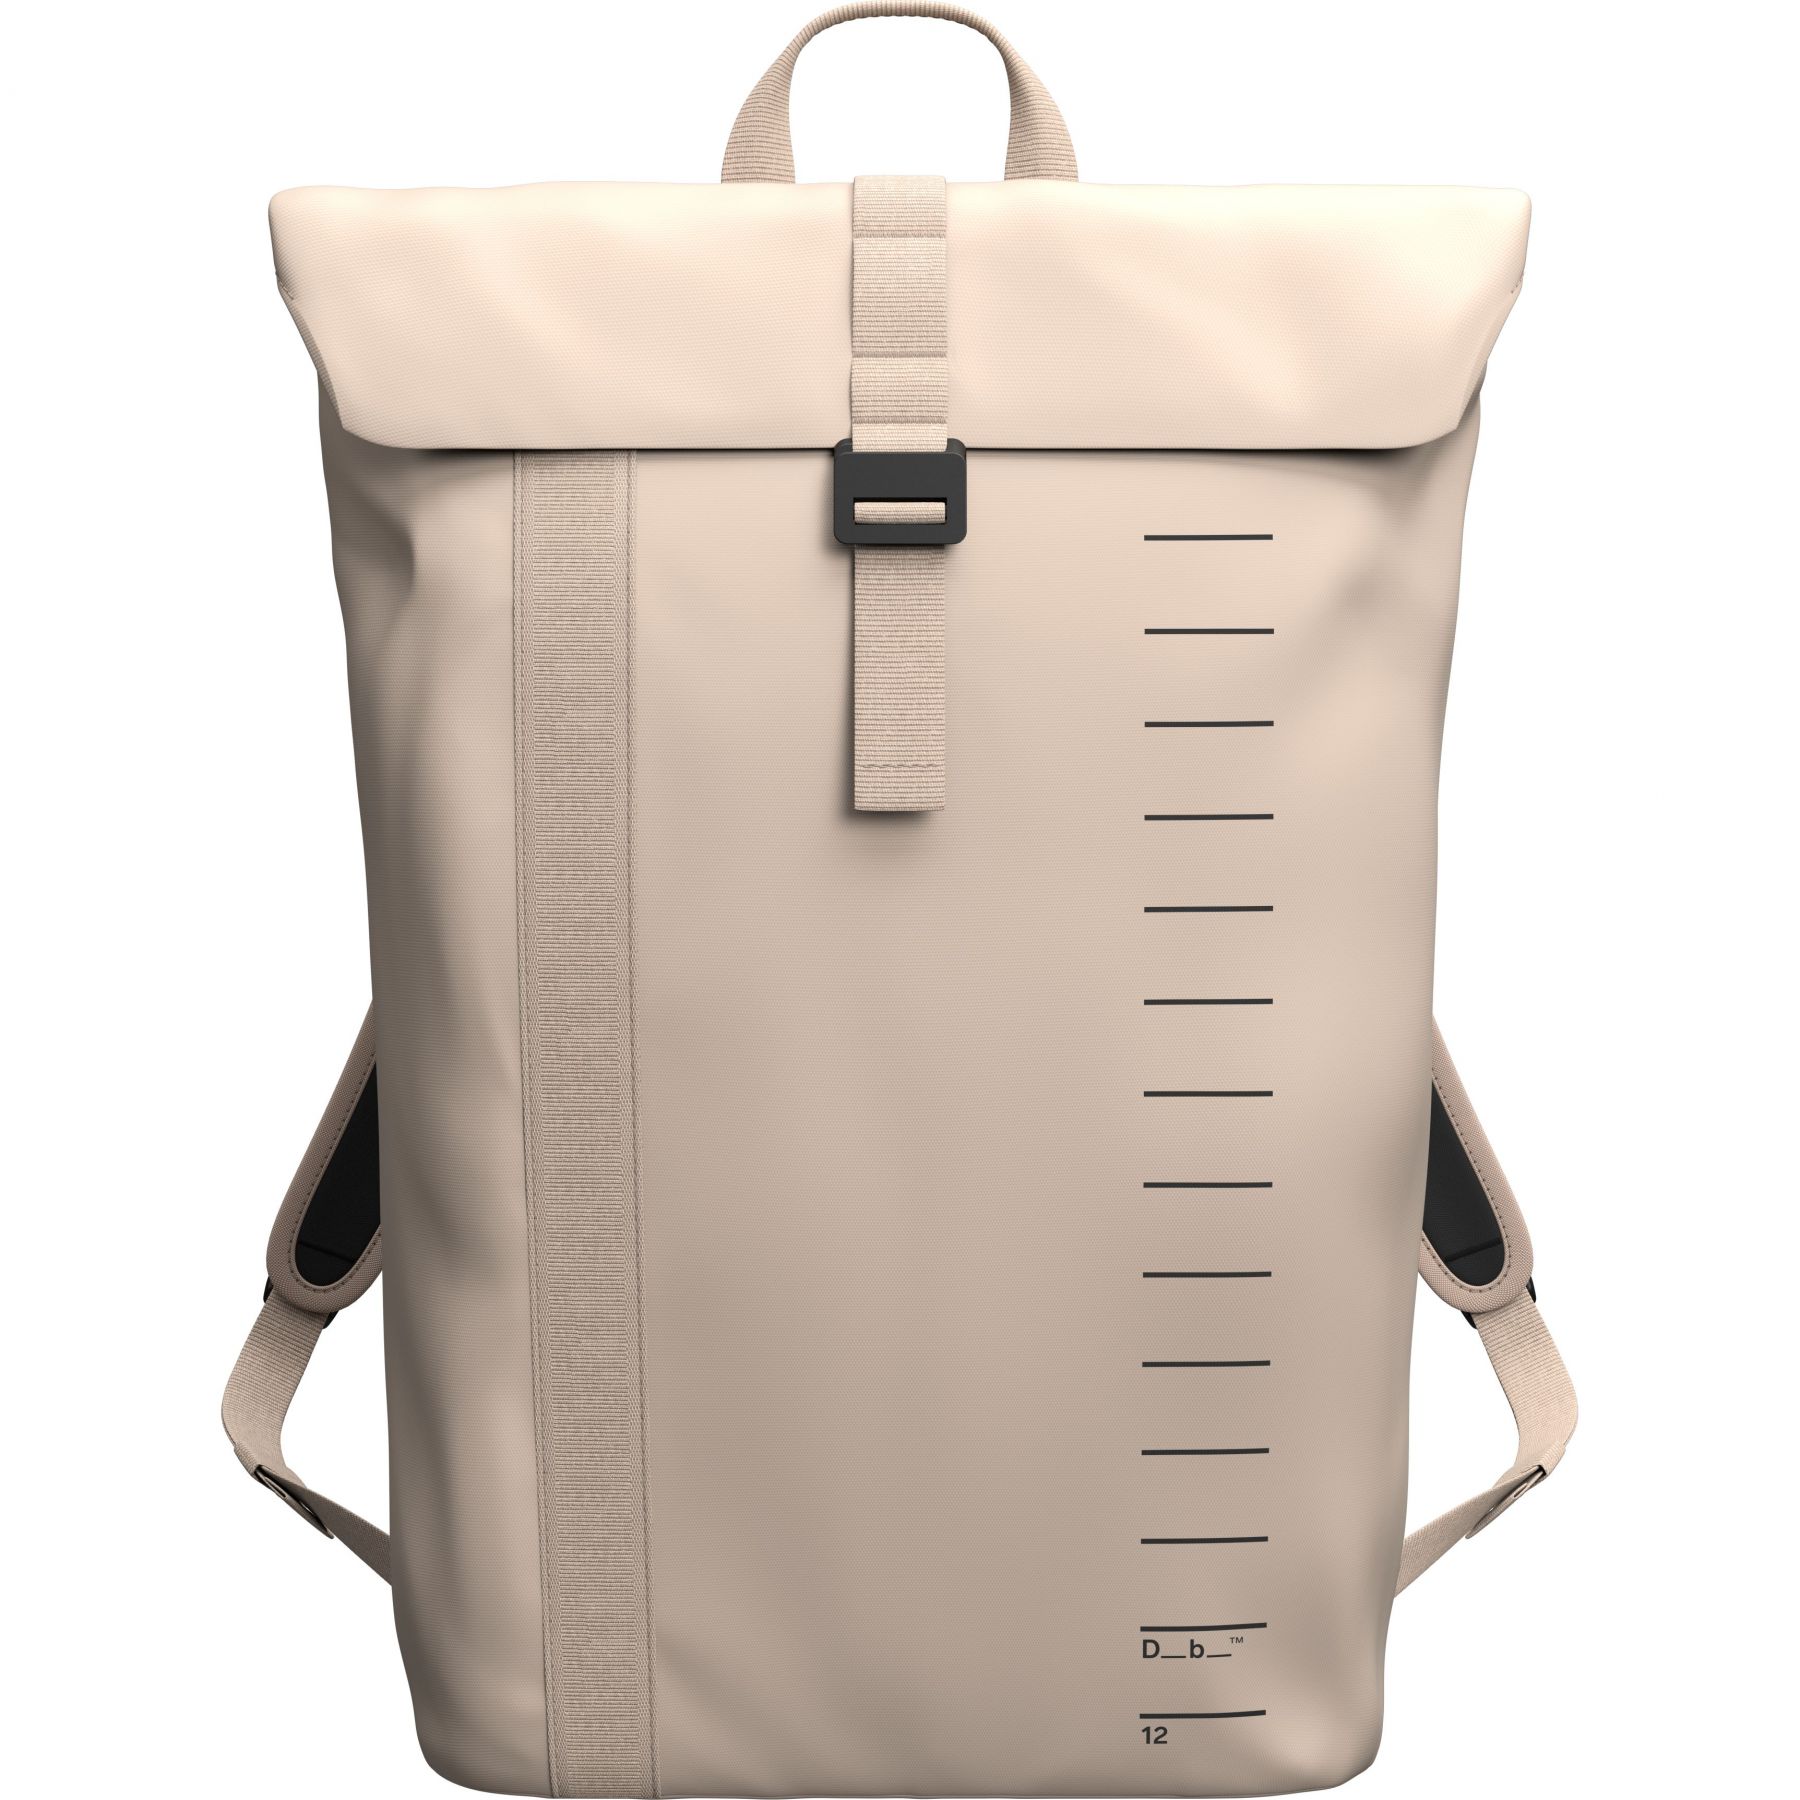 Brug Db Essential Backpack, 12L, fogbow beige til en forbedret oplevelse